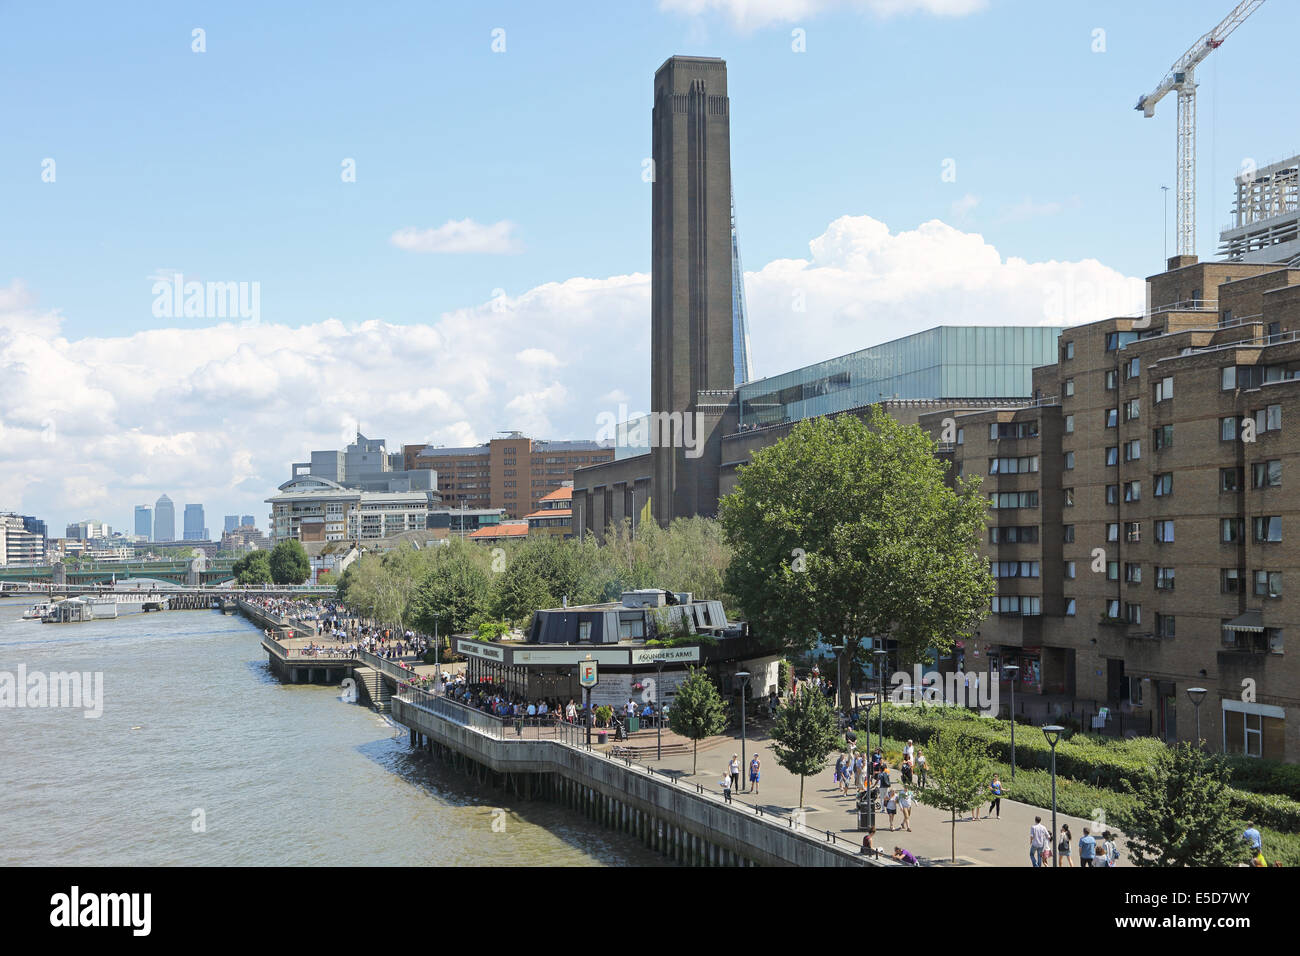 La Tate Modern Art Gallery de Londres vue de la gare de Blackfriars montrant la Tamise, la rive sud et de Canary Wharf Banque D'Images